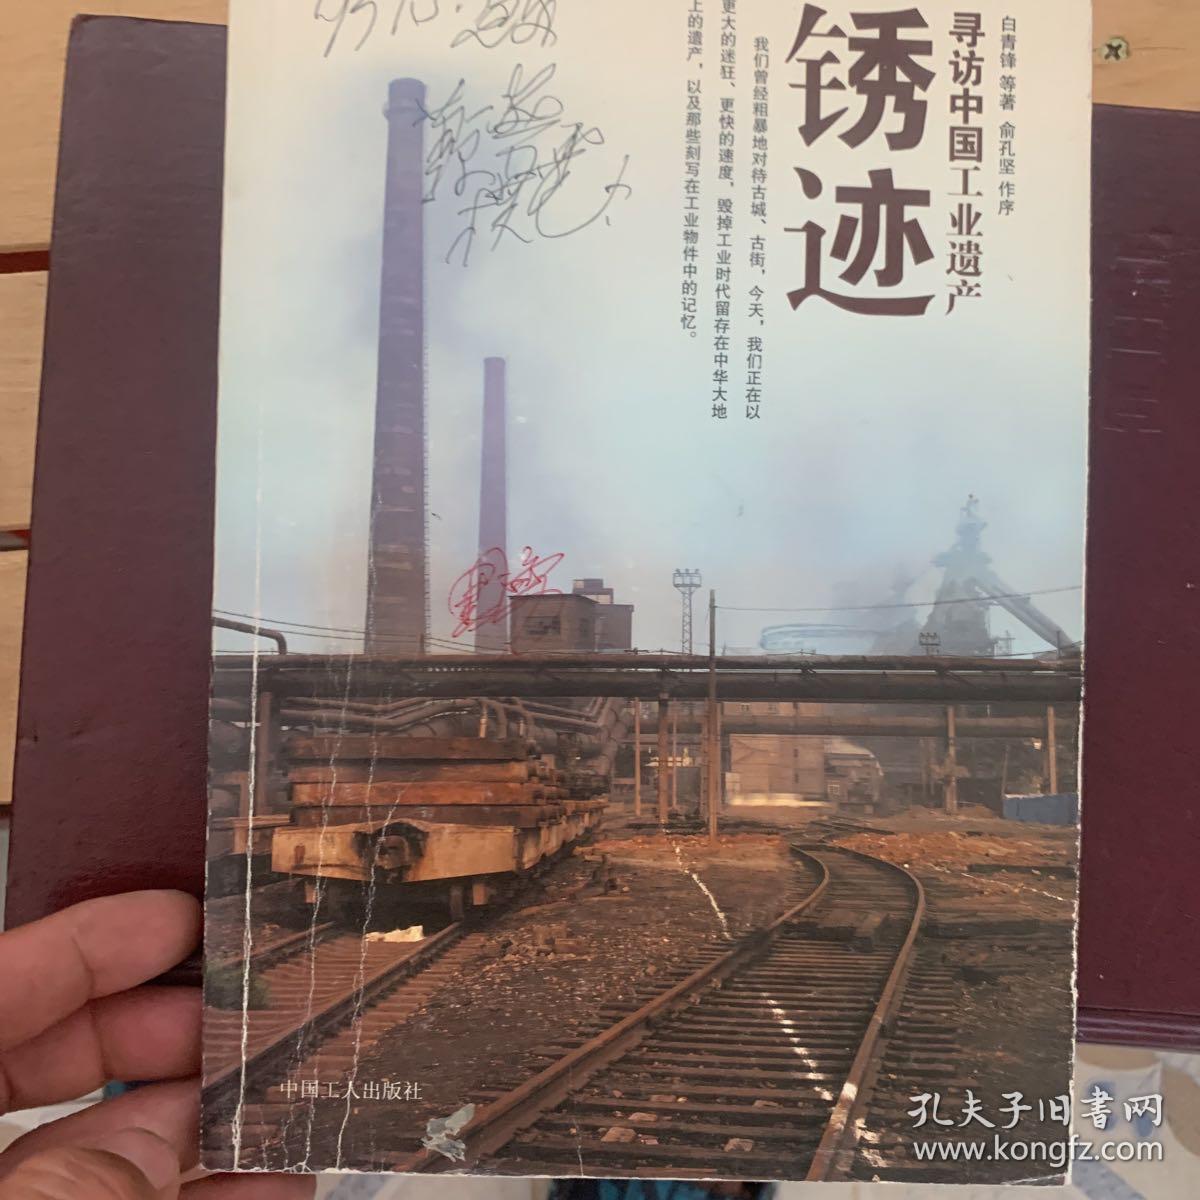 锈迹:寻访中国工业遗产